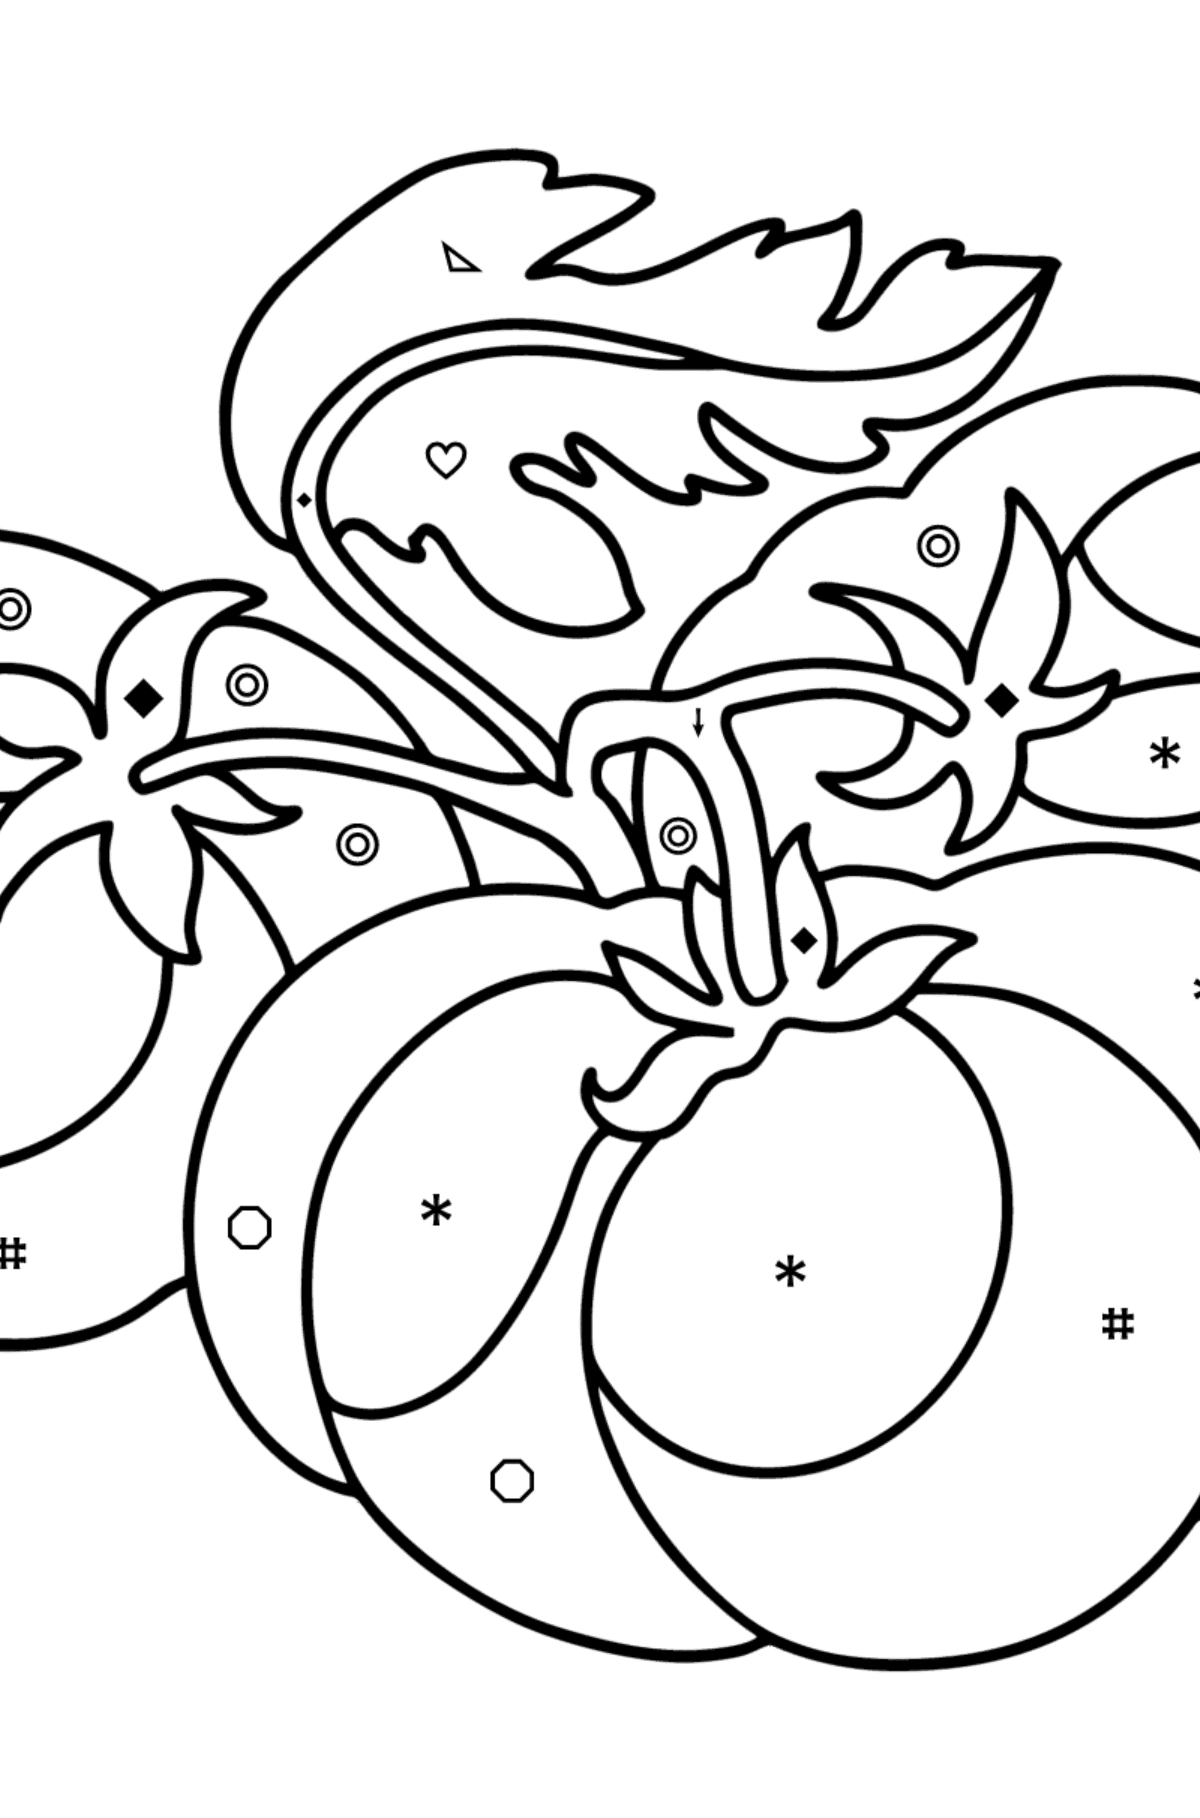 Boyama sayfası Büyük domates - Sembollere ve Geometrik Şekillerle Boyama çocuklar için